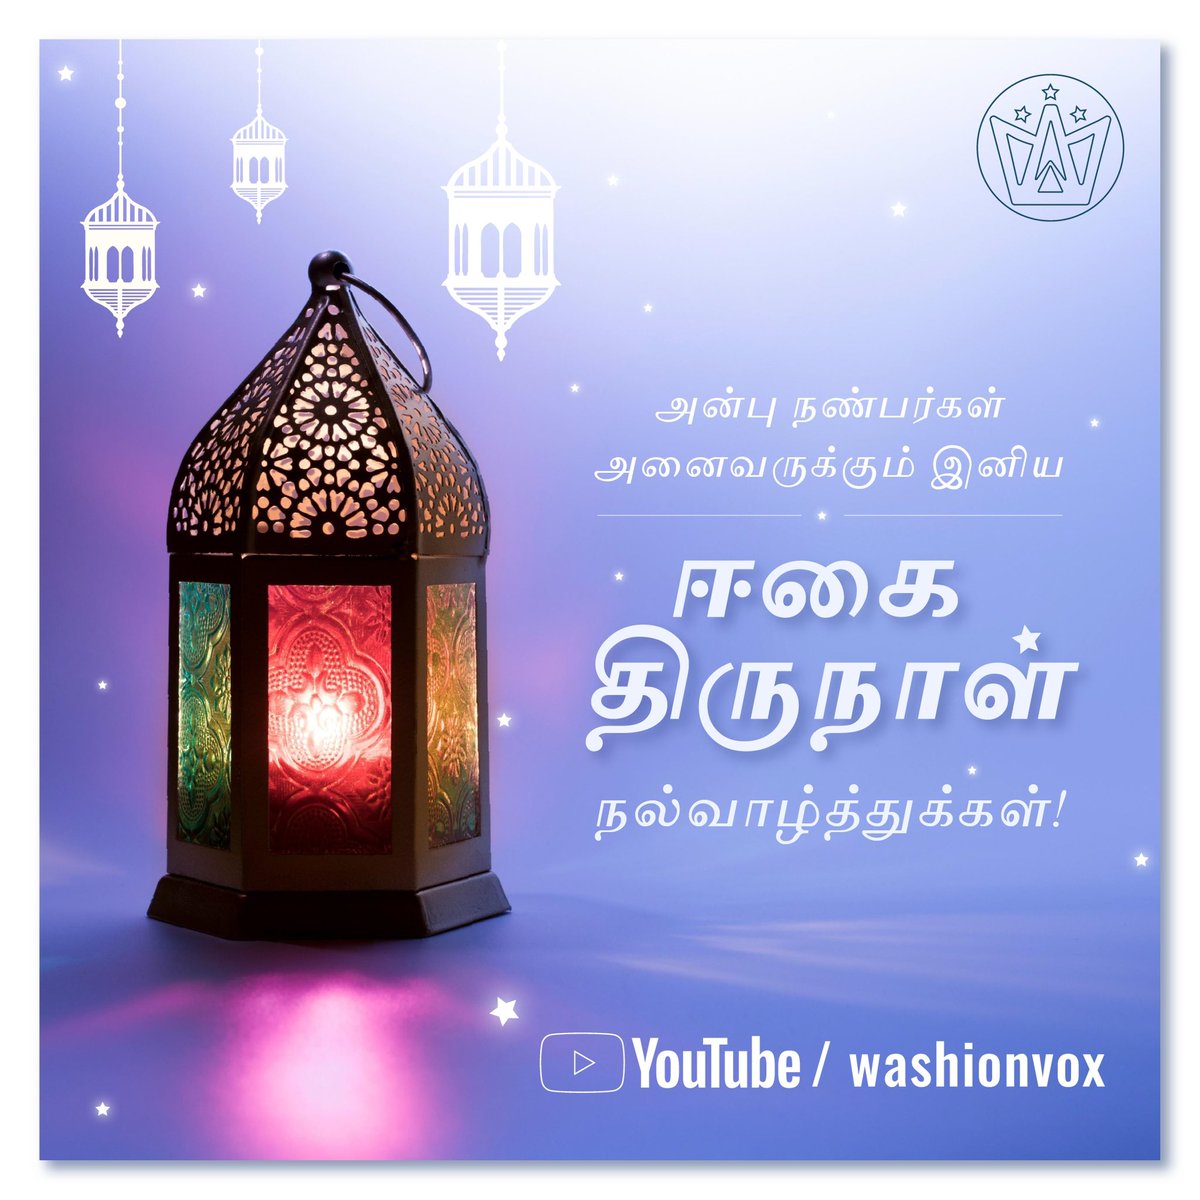 அன்பு உலக நண்பர்கள் மற்றும் சொந்தங்கள் அனைவருக்கும் இனிய ஈகை திருநாள் நல்வாழ்த்துக்கள்! 🌸🌙 🕌 🤲🏻 ✨

Very Happy Eid-Mubarak to all my dear friends and family around the world! 🌸🌙 🕌 🤲🏻 ✨

#eid #eidmubarak #ramadan2023 #tamilvlog #eidvlog #ramadanvlog #tamil #Dubai #vlog